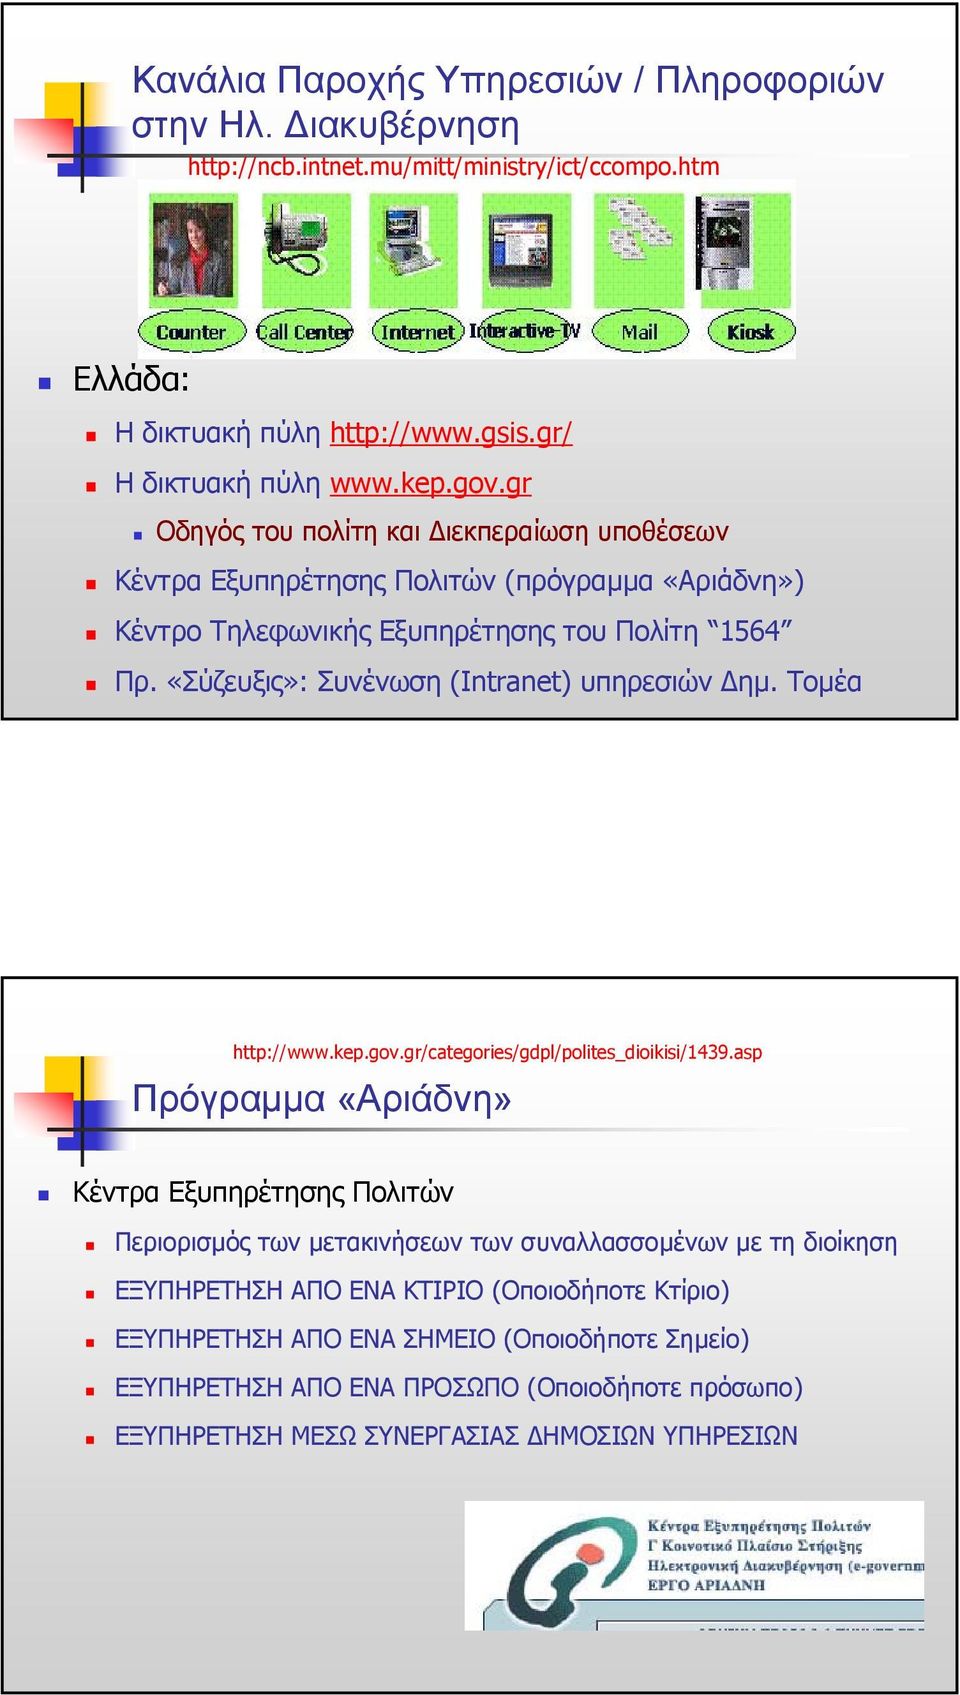 «Σύζευξις»: Συνένωση (Intranet) υπηρεσιών ηµ. Τοµέα http://www.kep.gov.gr/categories/gdpl/polites_dioikisi/1439.